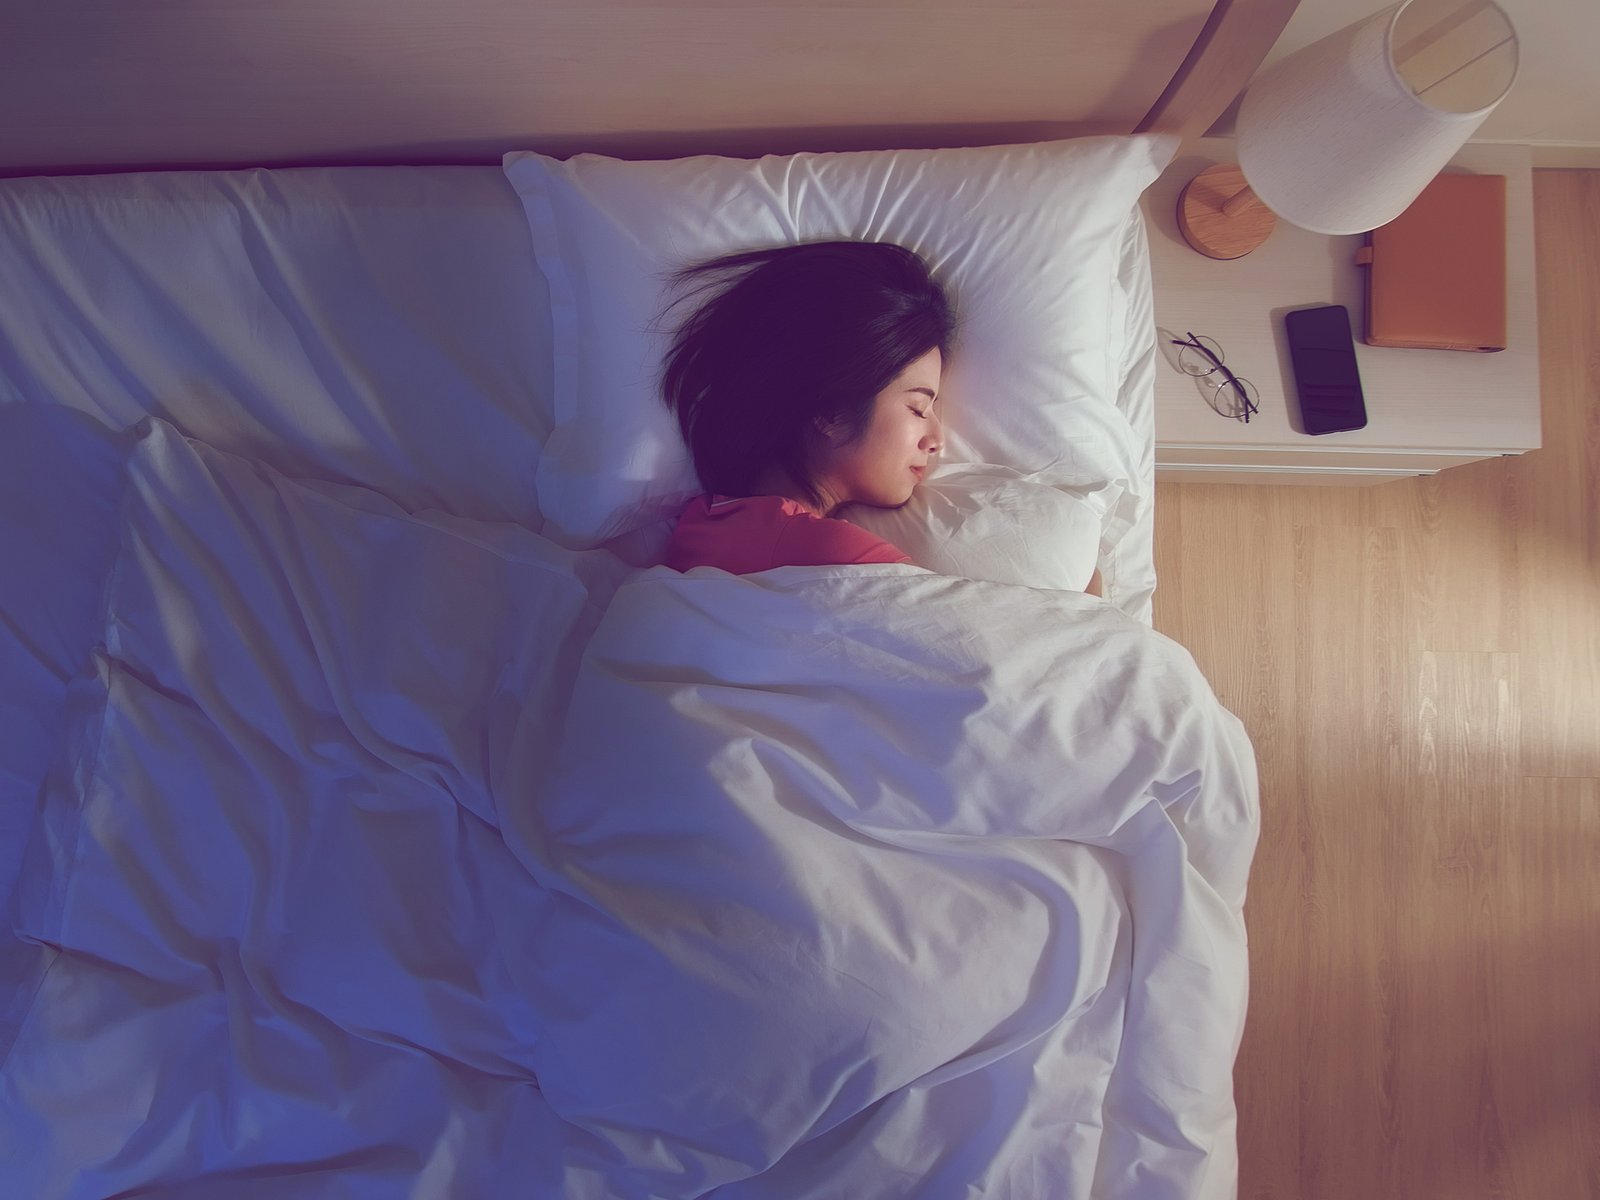 Kopfkissen-Test: 4 Kissen sorgen für Schlafkomfort höchsten